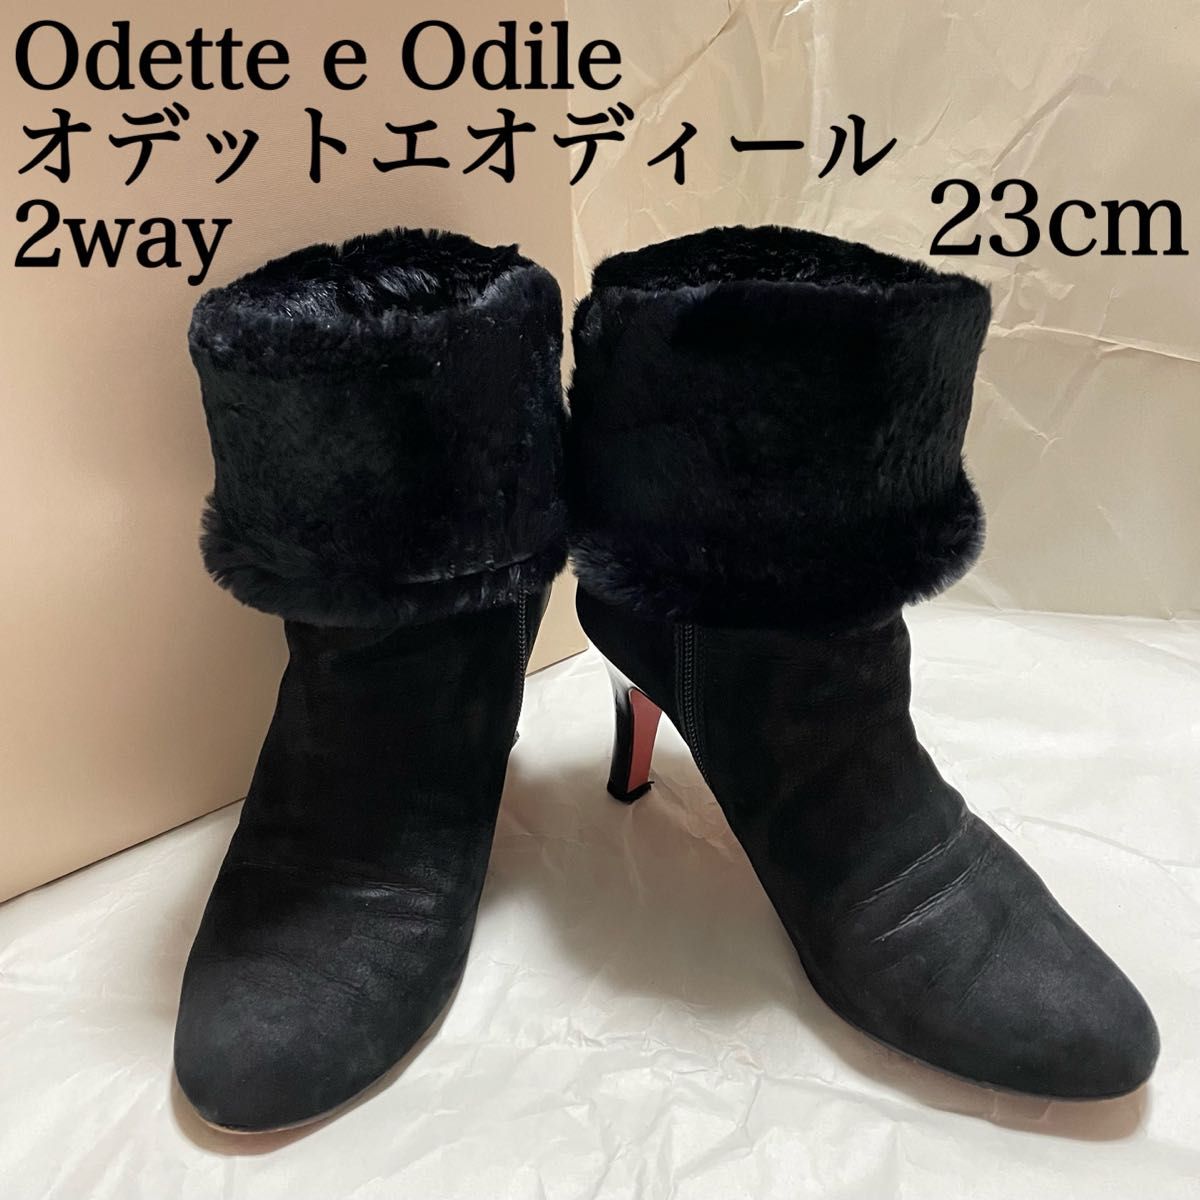 Odette e Odile スエードブーツ - ブーツ